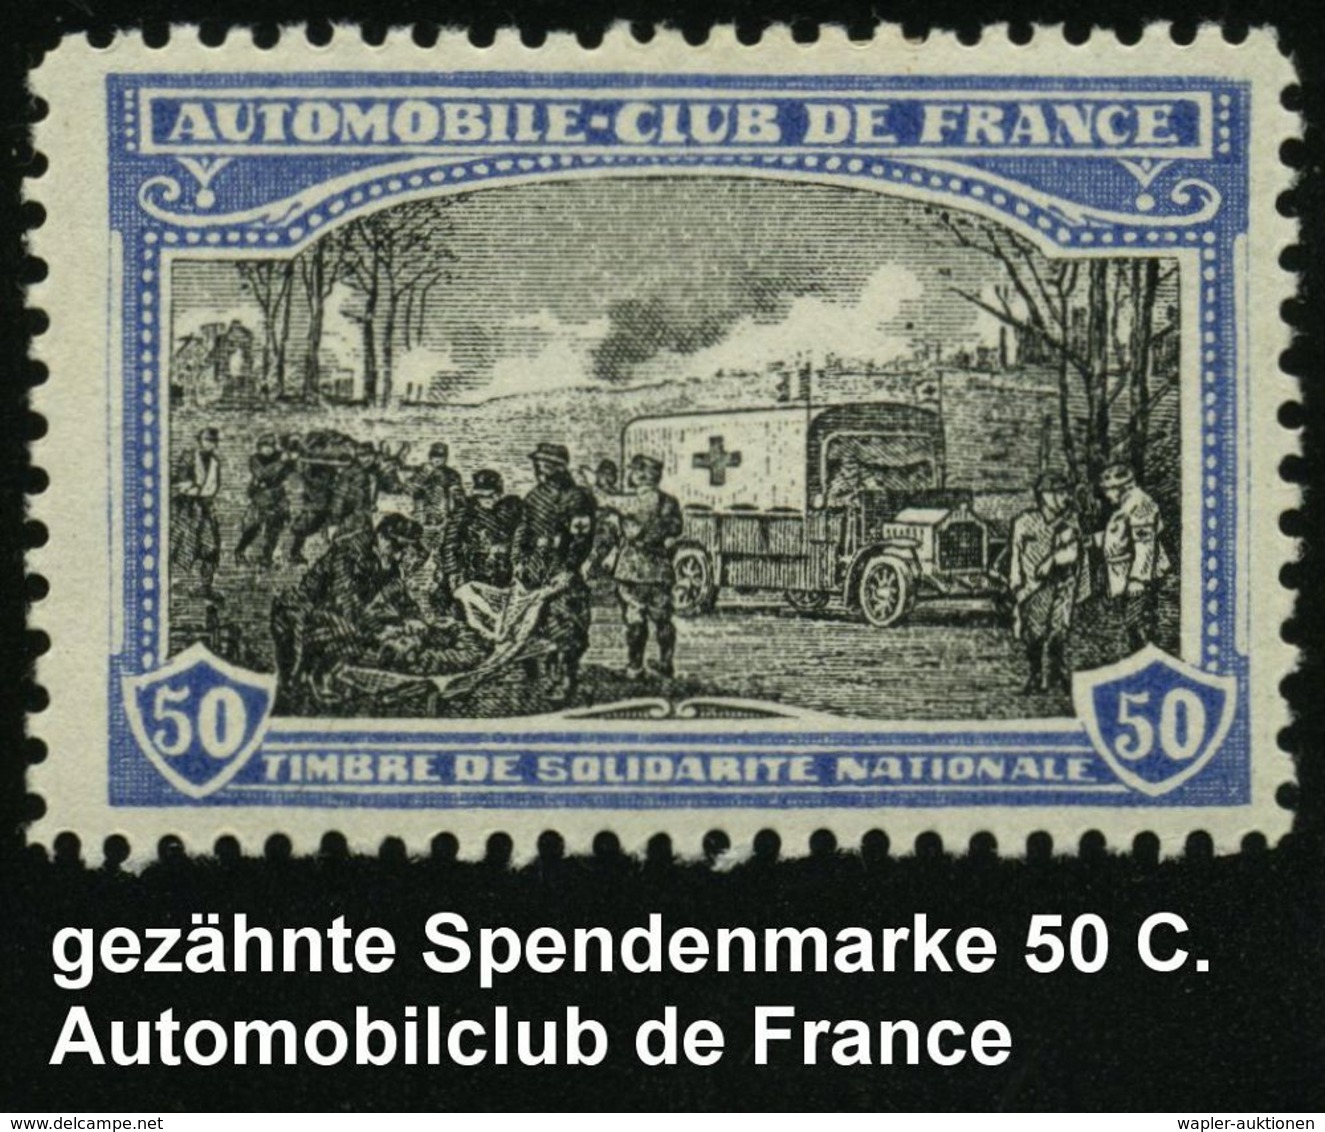 KRAFTFAHR-TRUPPEN / MILITÄR-KFZ. (ohne PANZER) : FRANKREICH 1914 50 C. Rotkreuz-Spendenmarken "AUTOMOBILE-CLUB DE FRANCE - Cars